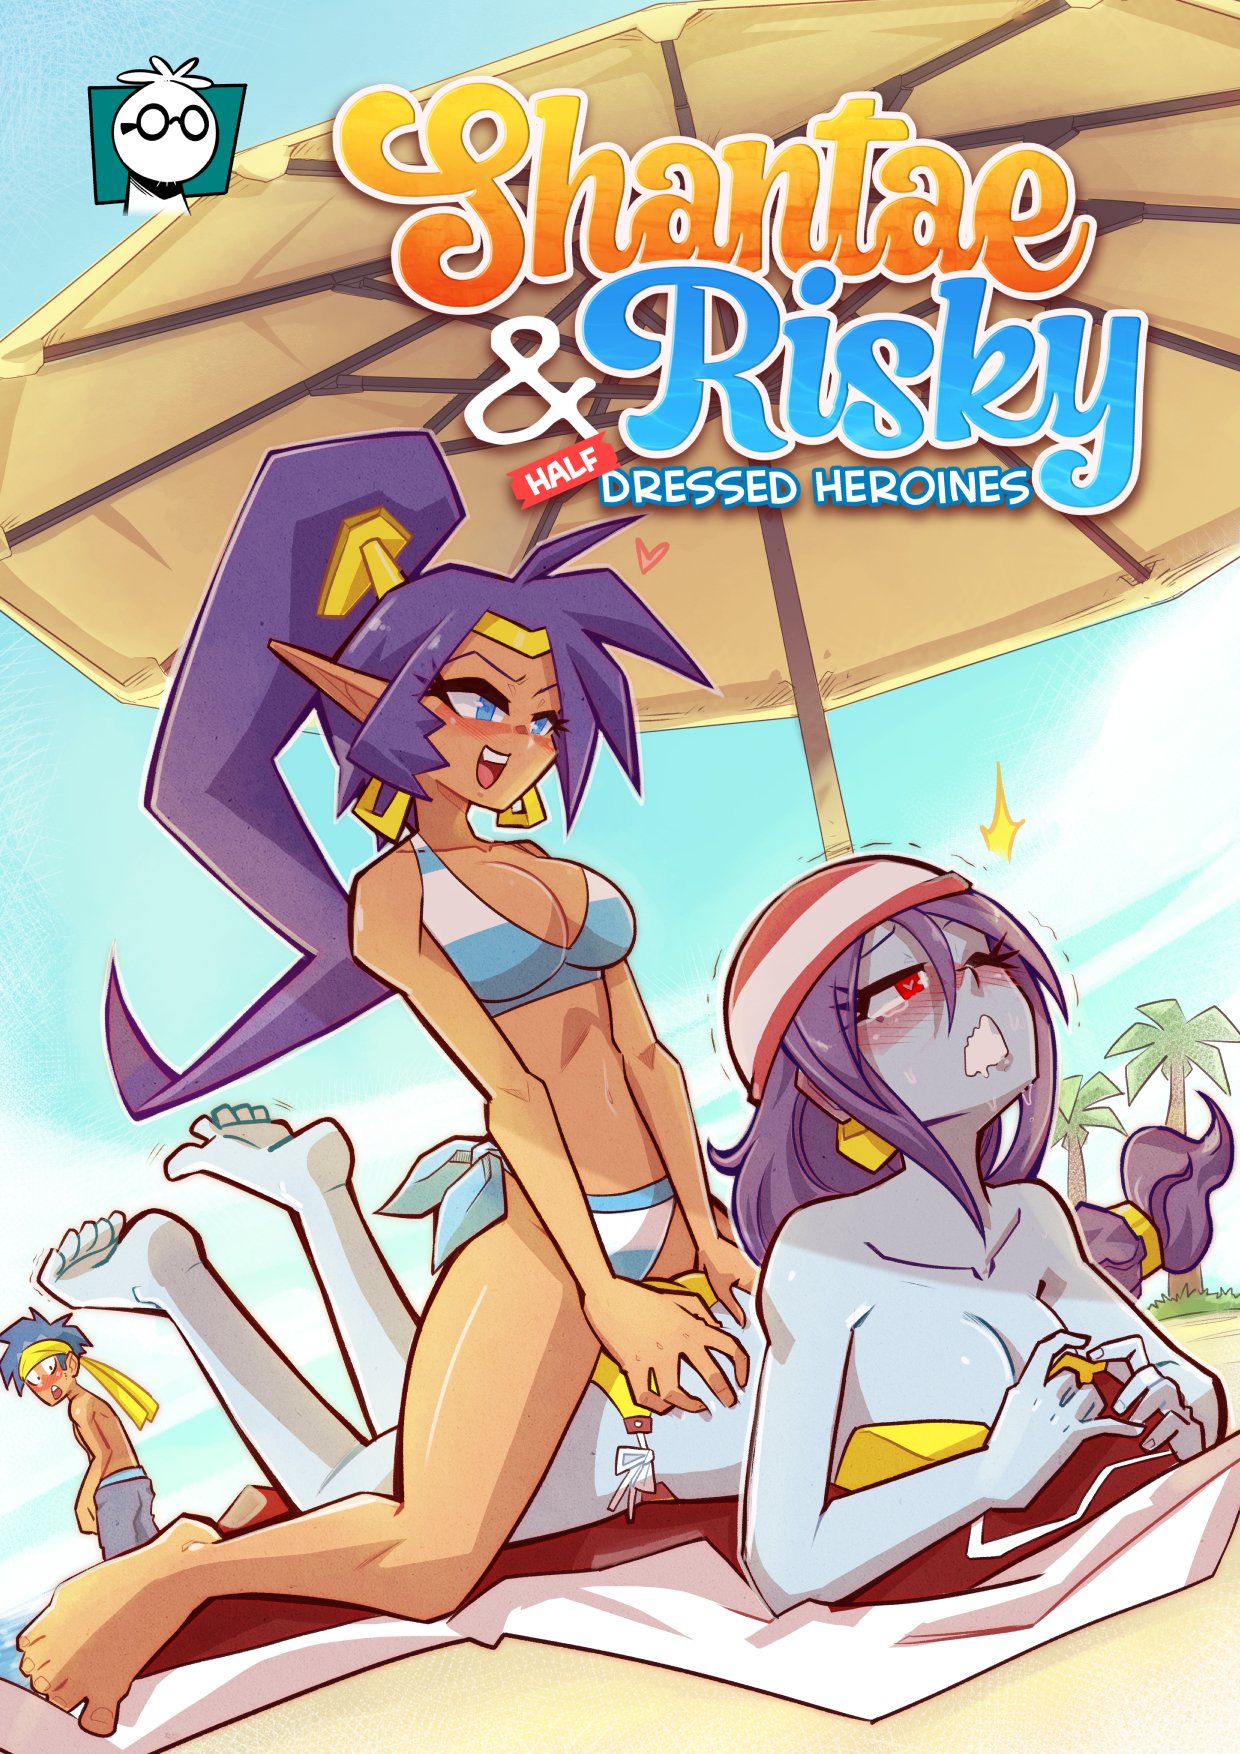 SureFap xxx porno Shantae - [Mr.E] - Shantae & Risky - Half Dressed Heroines